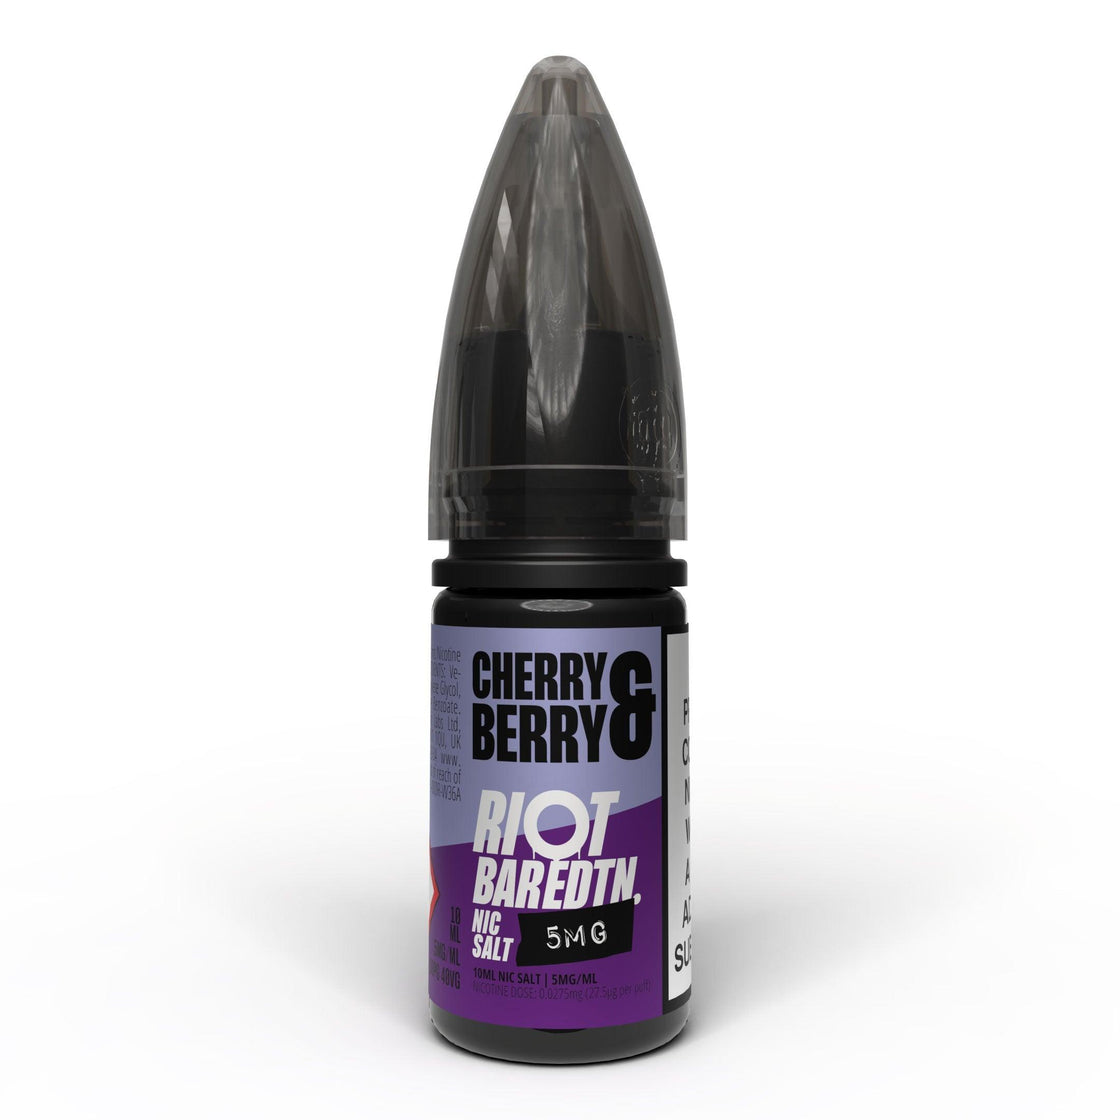 CHERRY BERRY - BAR EDTN - 10ML NIC SALT E-LIQUID - 5MG | 10MG | 20MG BY RIOT SQUAD - Vapeslough